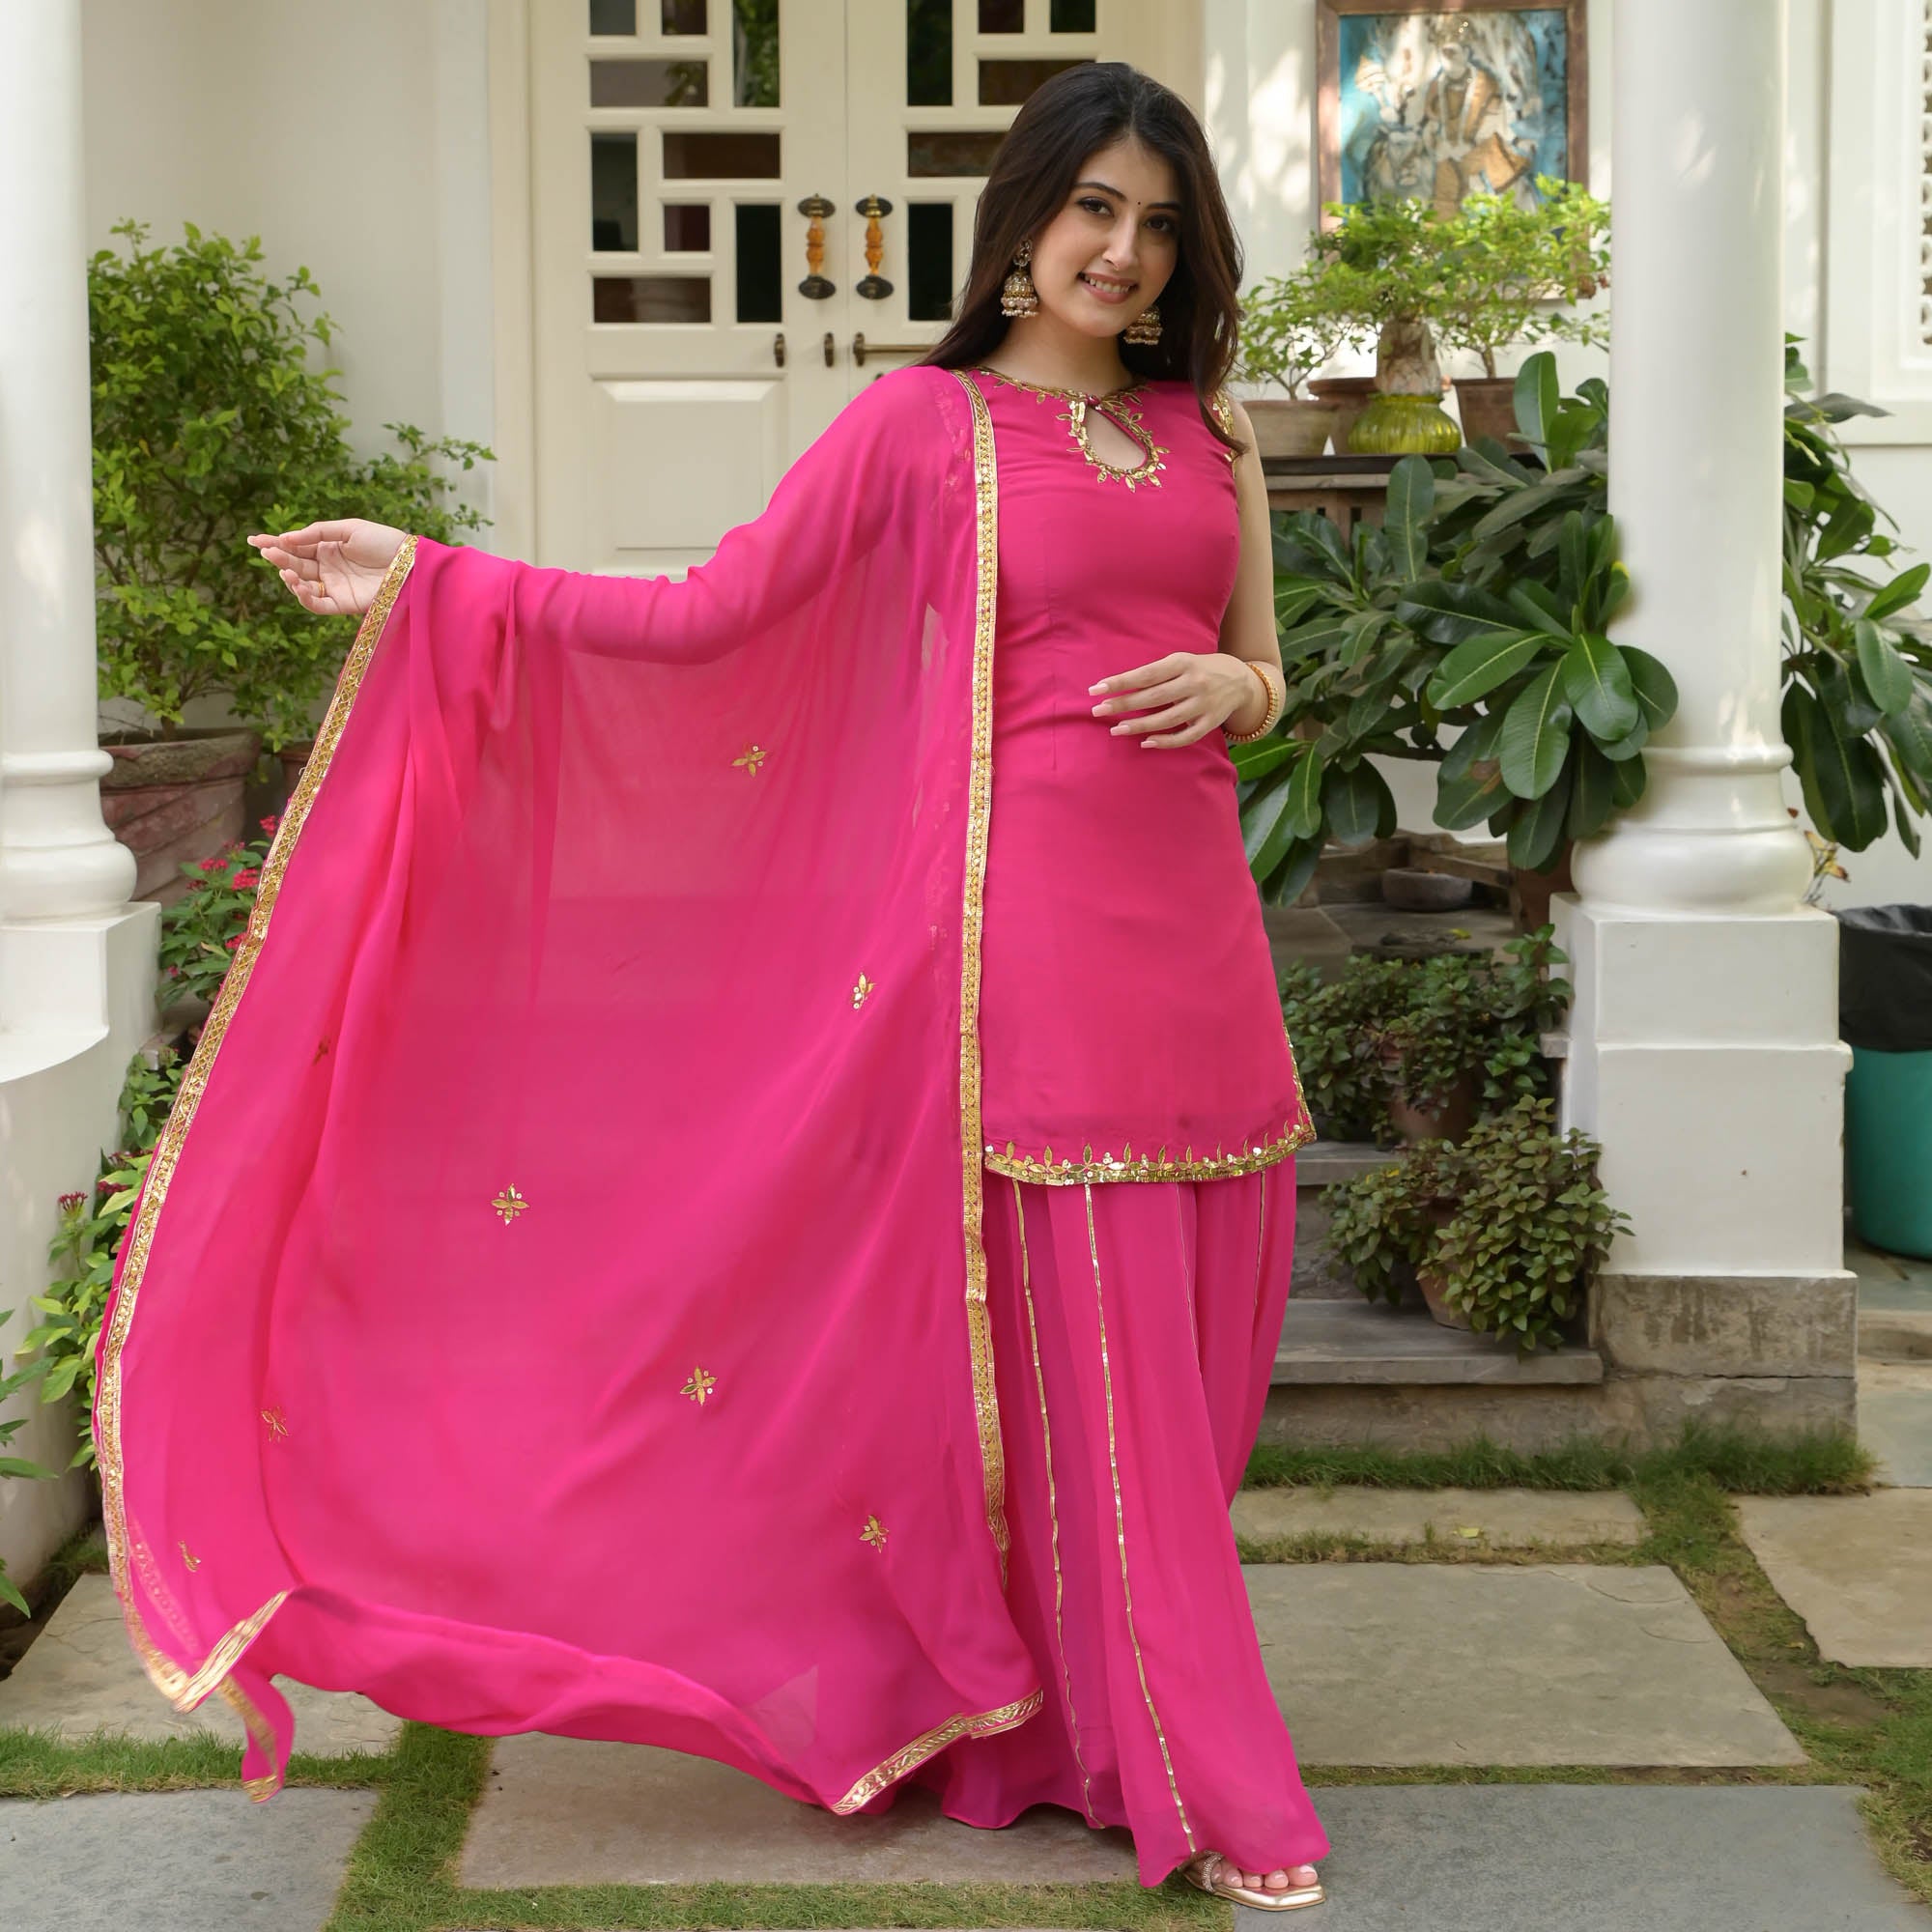 Pin by ninecolours.com on Salwar kameez | Sharara suit, Salwar kameez  designs, How to dye fabric